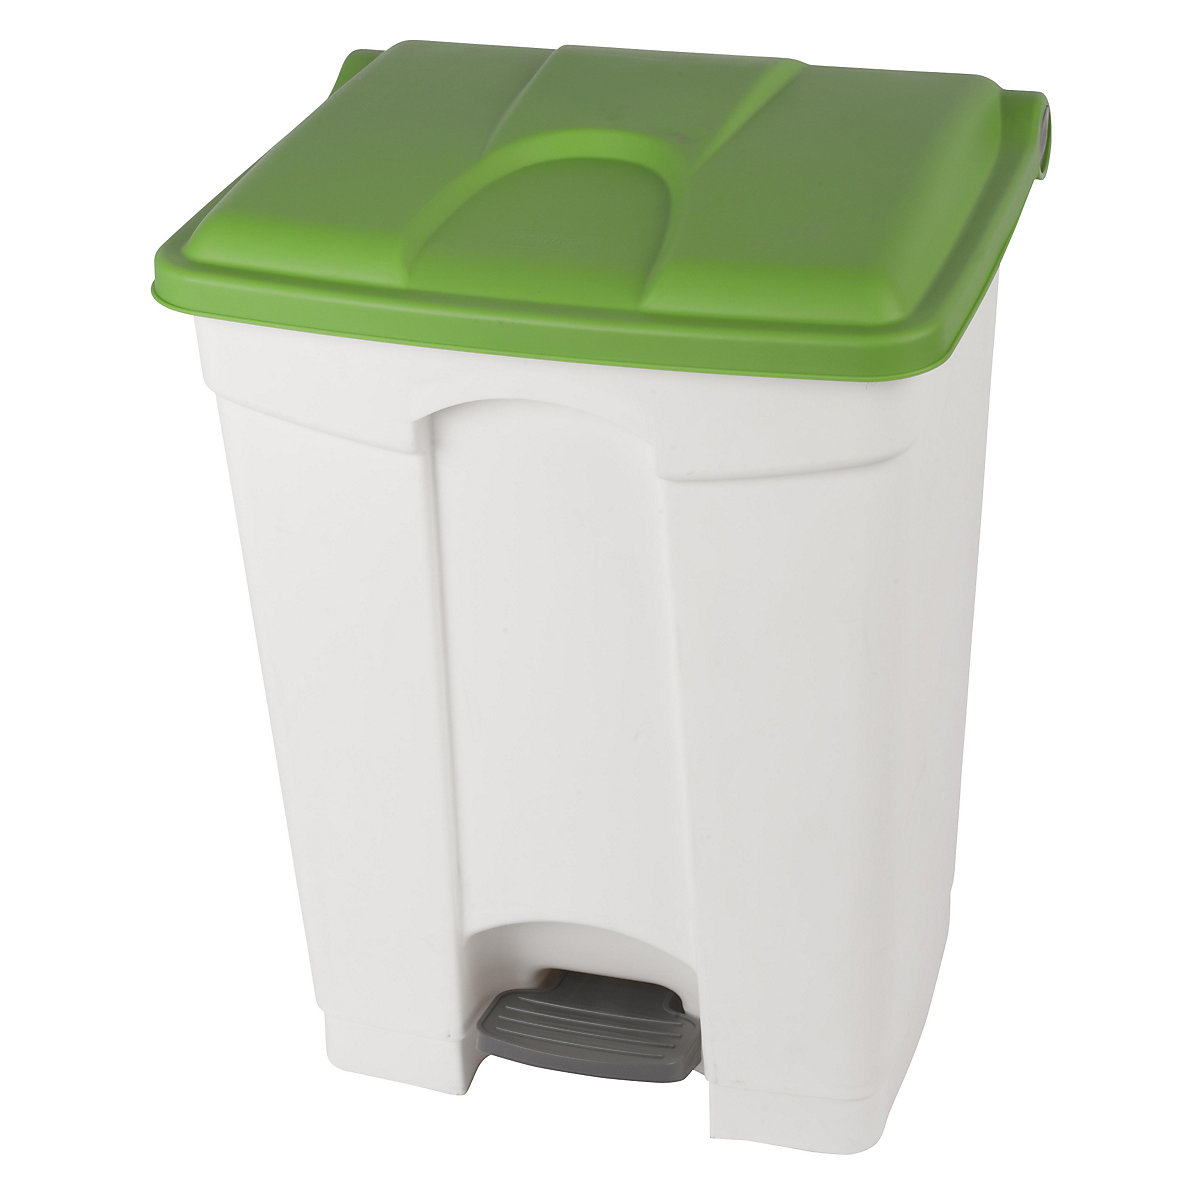 EUROKRAFTbasic – Nádoba na odpad s pedálem, objem 70 l, š x v x h 505 x 675 x 415 mm, bílá, zelené víko